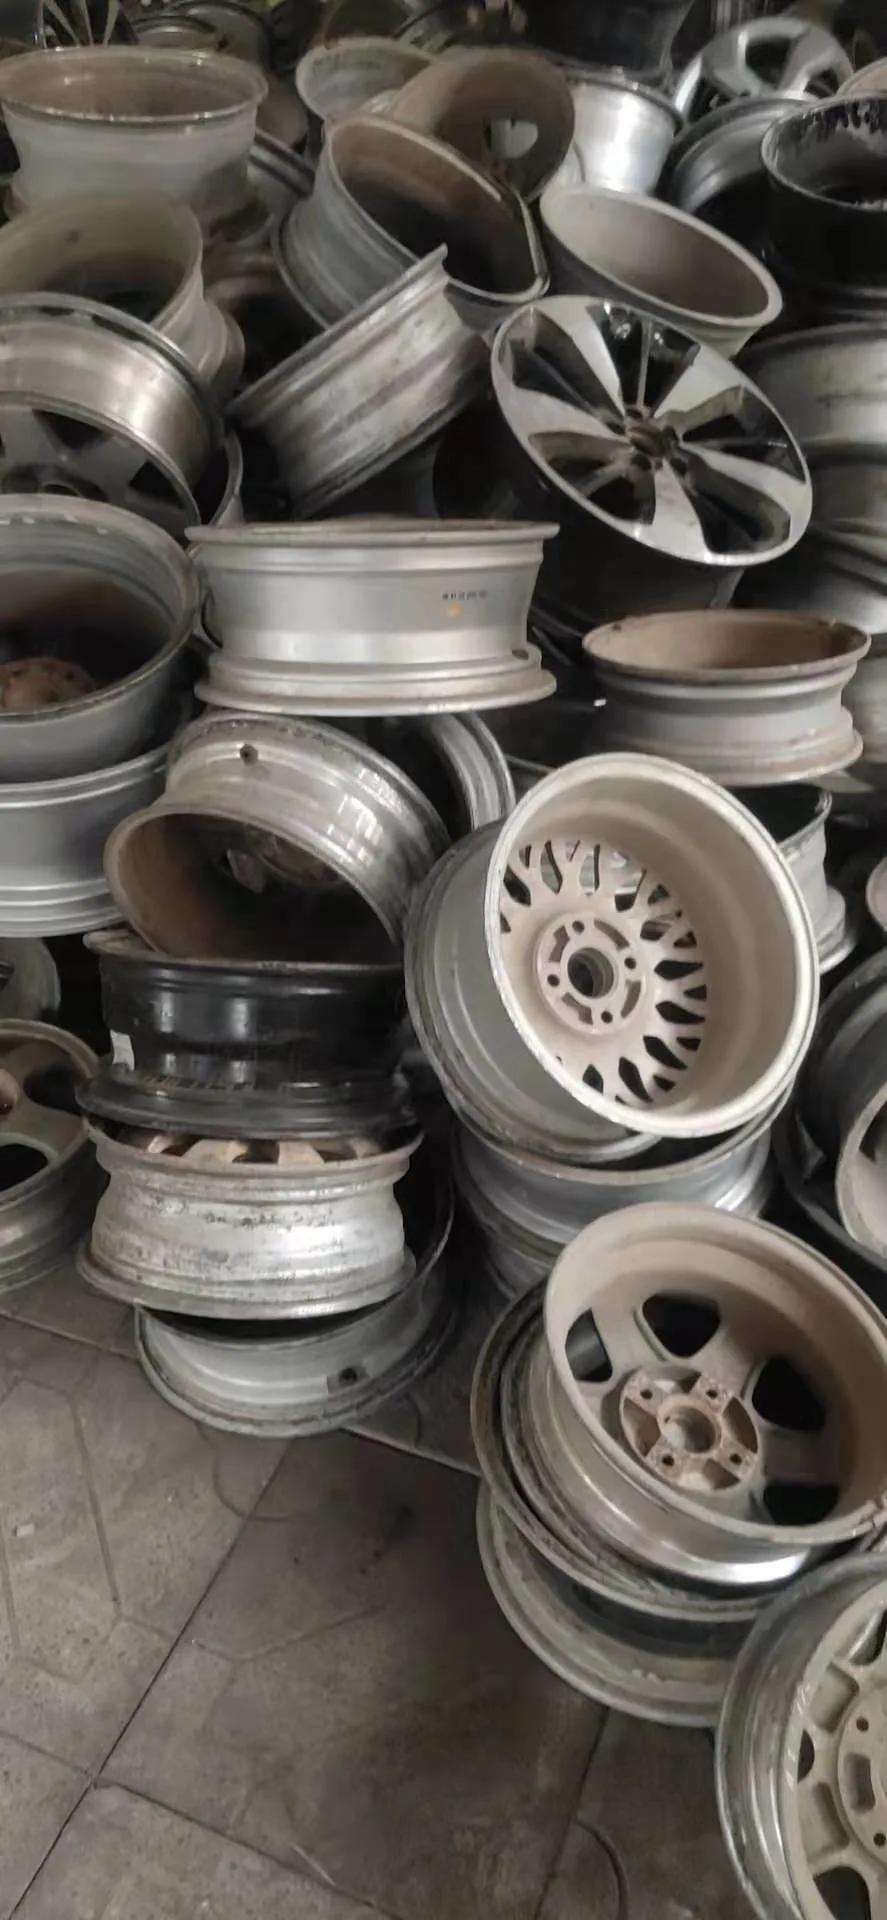 Aluminium Scrap 6063 Ubc Aluminum Wheel Scrap for Sale Waste Hub in China